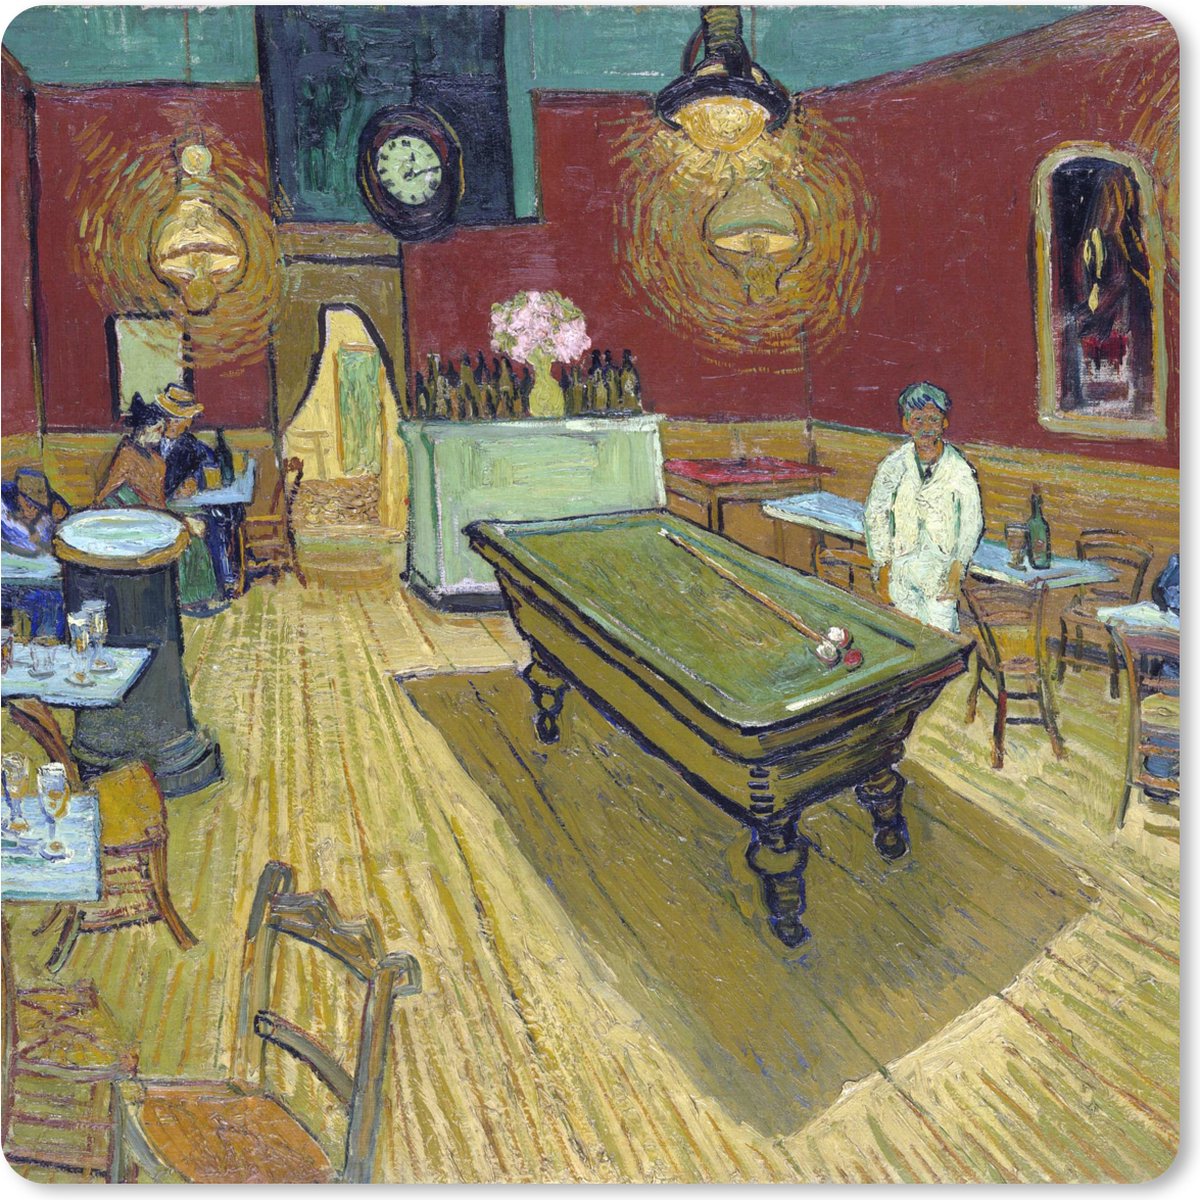 Muismat XXL - Bureau onderlegger - Bureau mat - Het Nachtcafé - Schilderij van Vincent van Gogh - 50x50 cm - XXL muismat